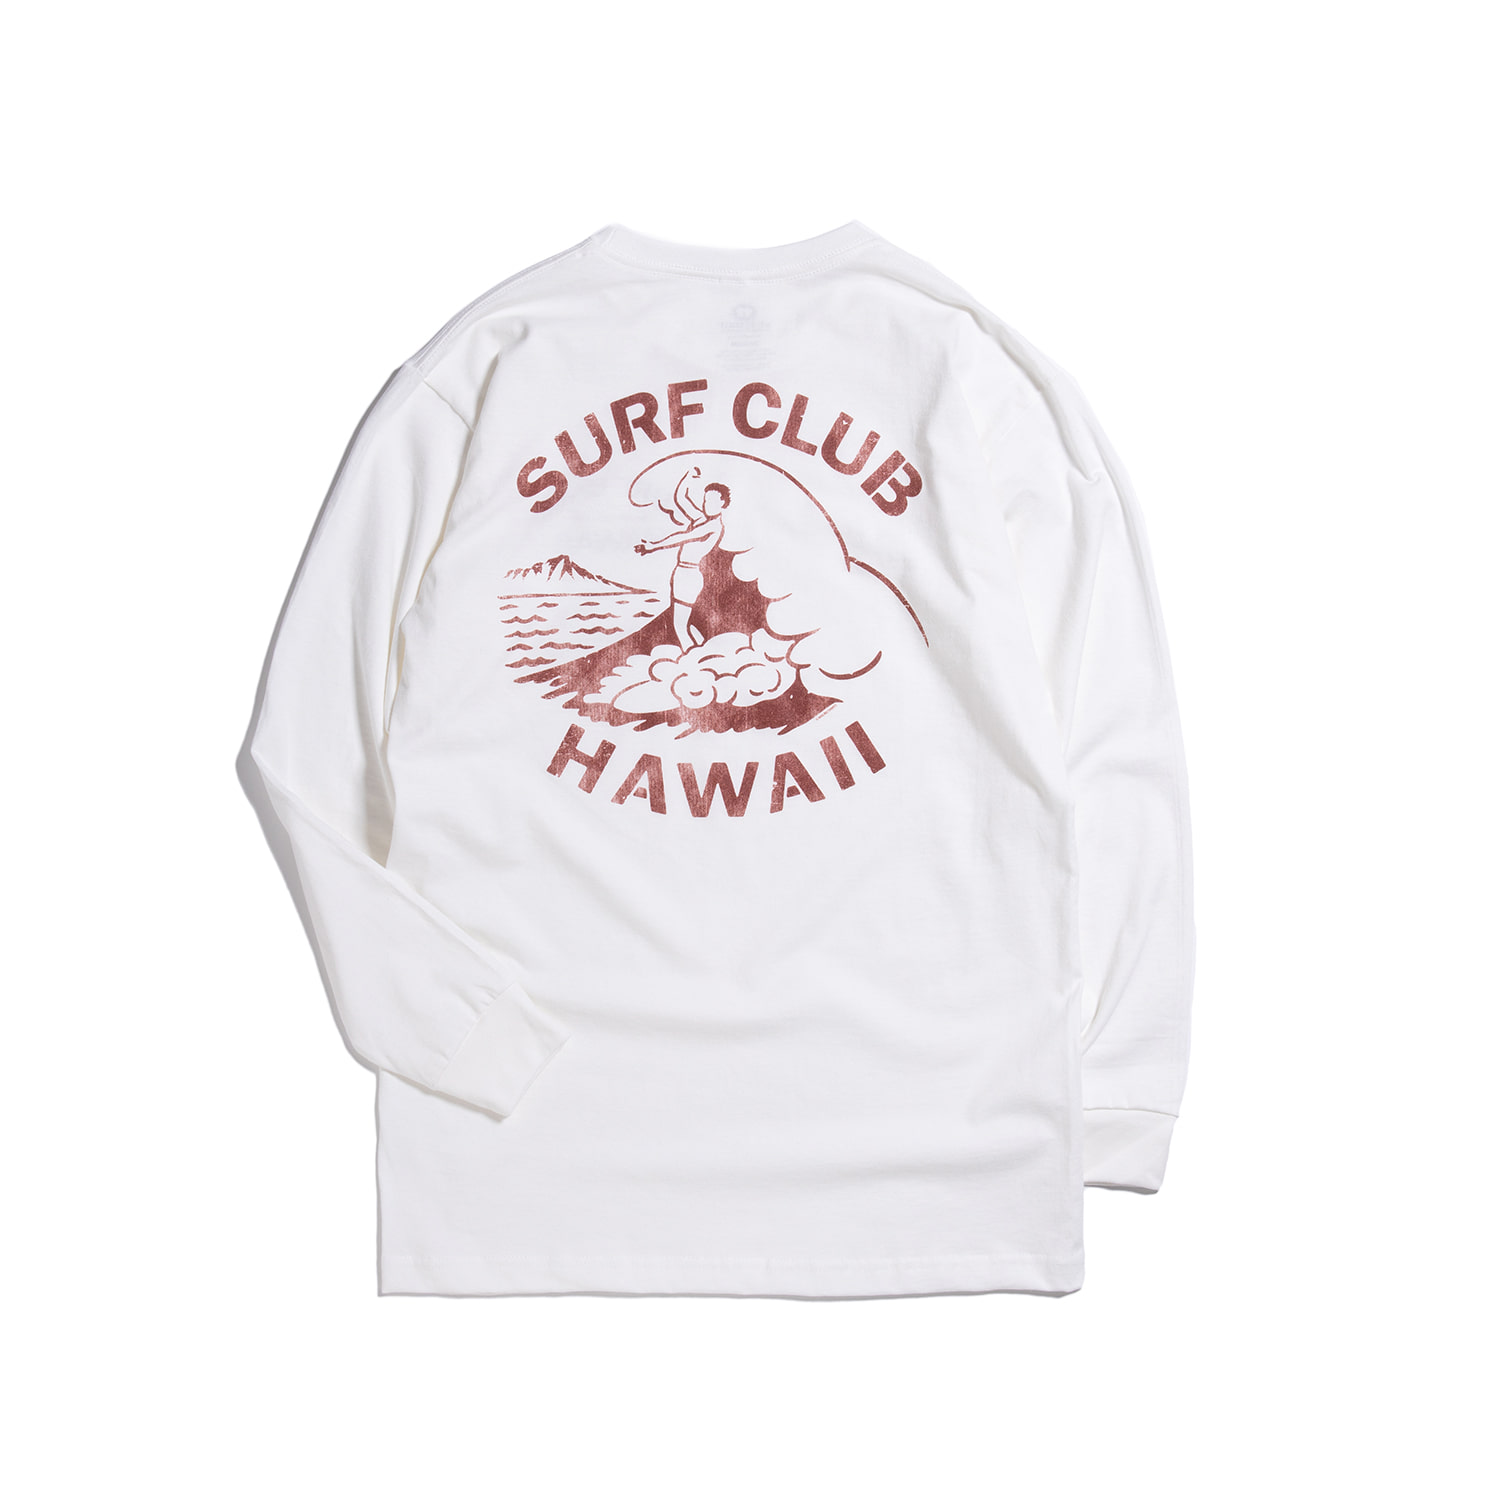 Surf Club Hawaii Long Sleeve Tee